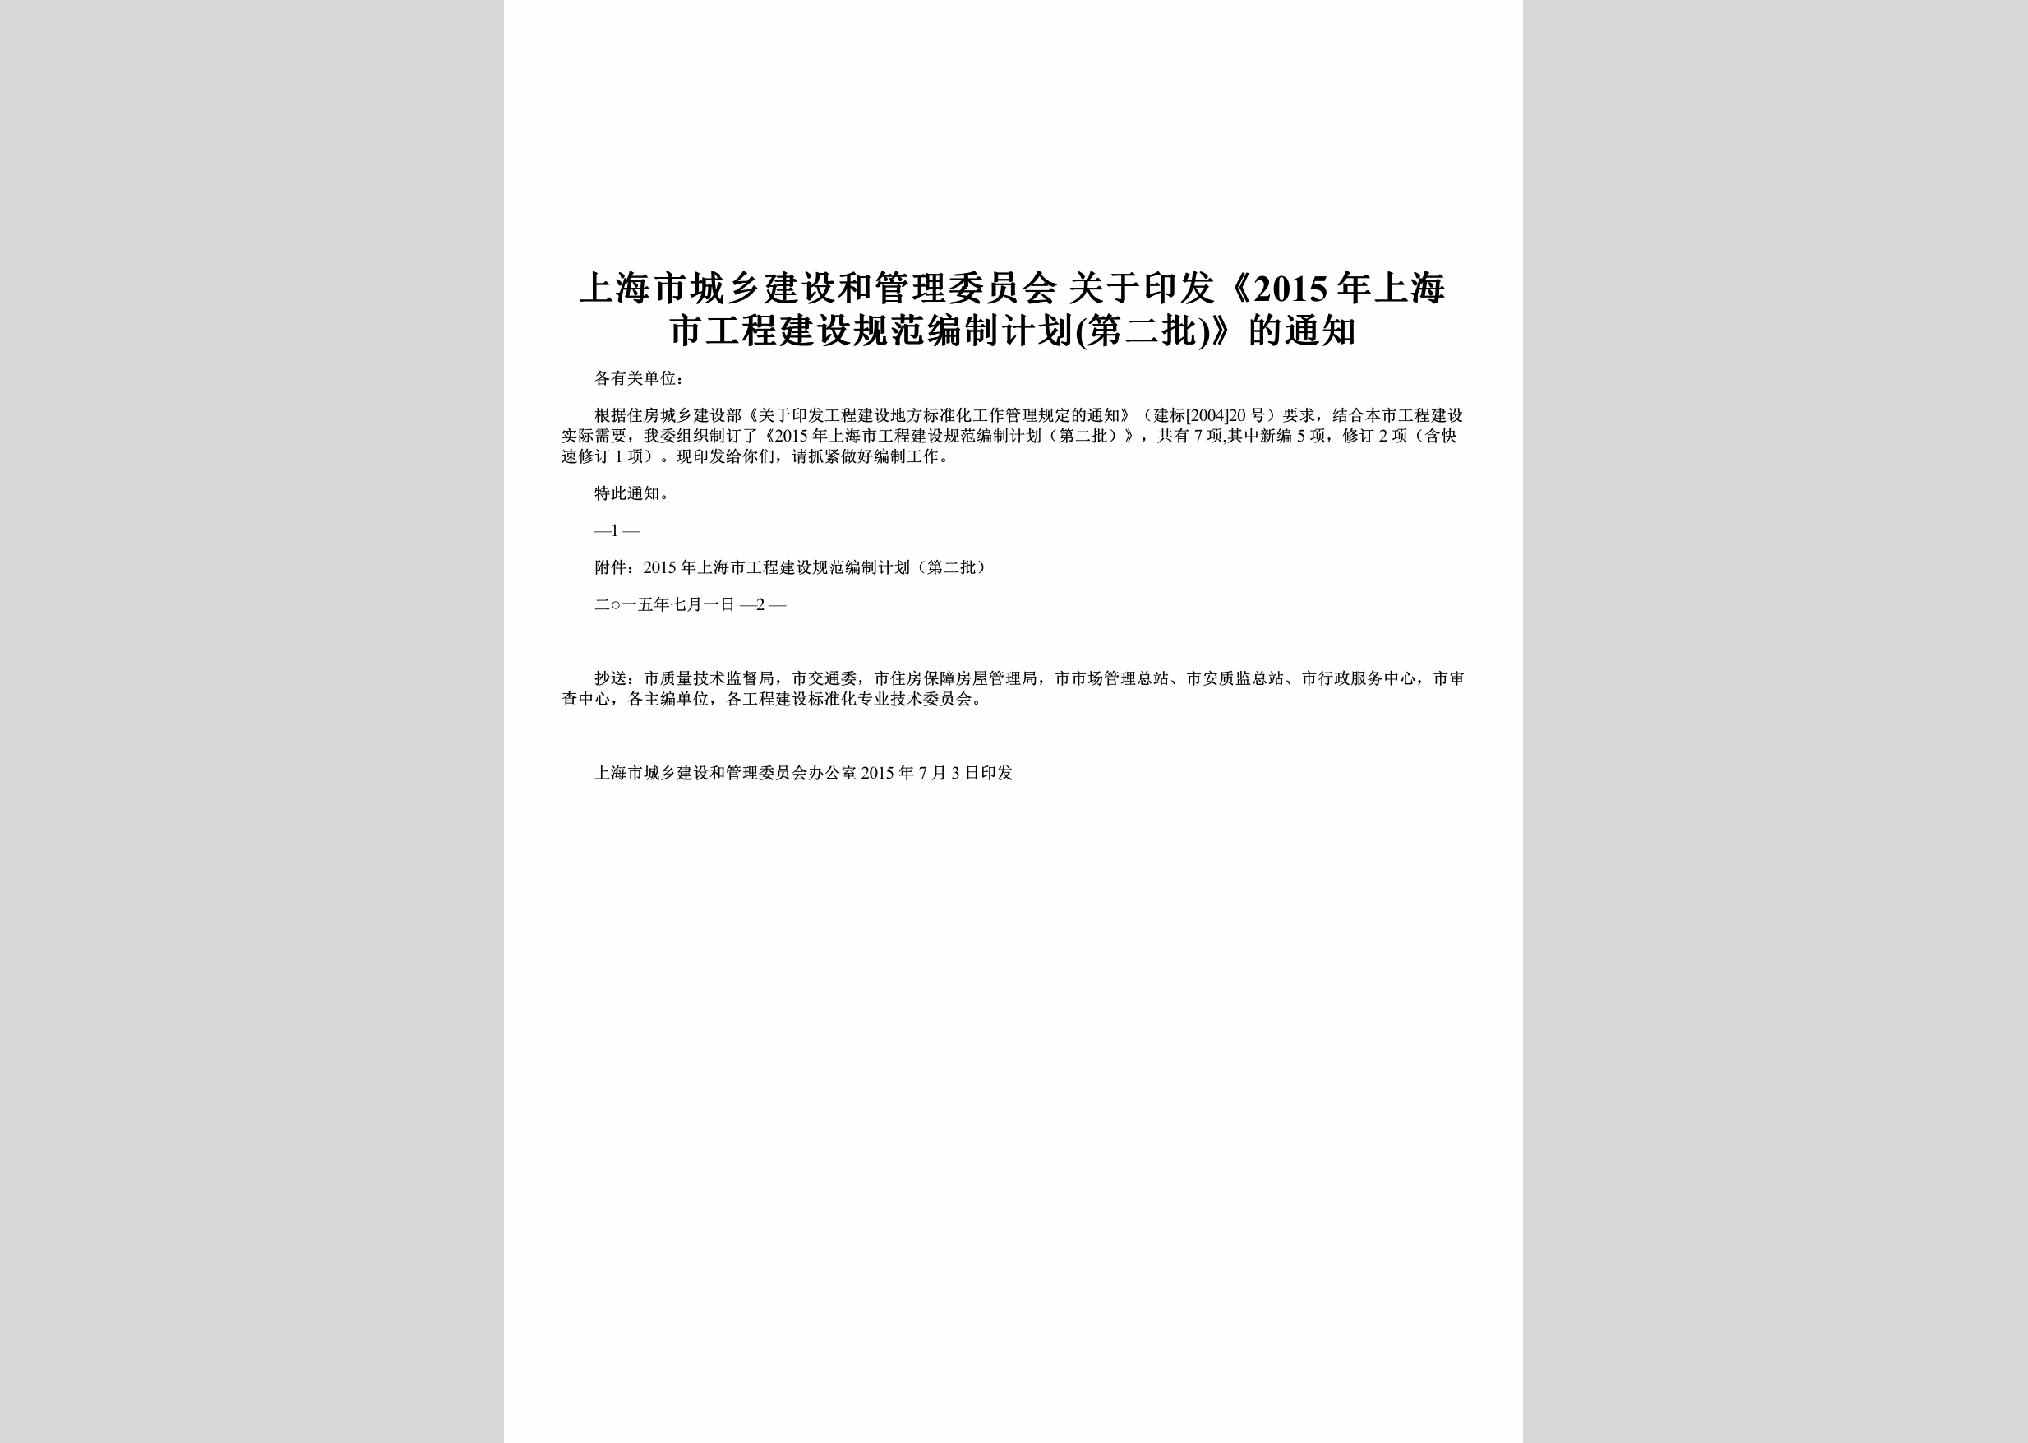 SH-GCJSBZJH-2015：关于印发《2015年上海市工程建设规范编制计划(第二批)》的通知